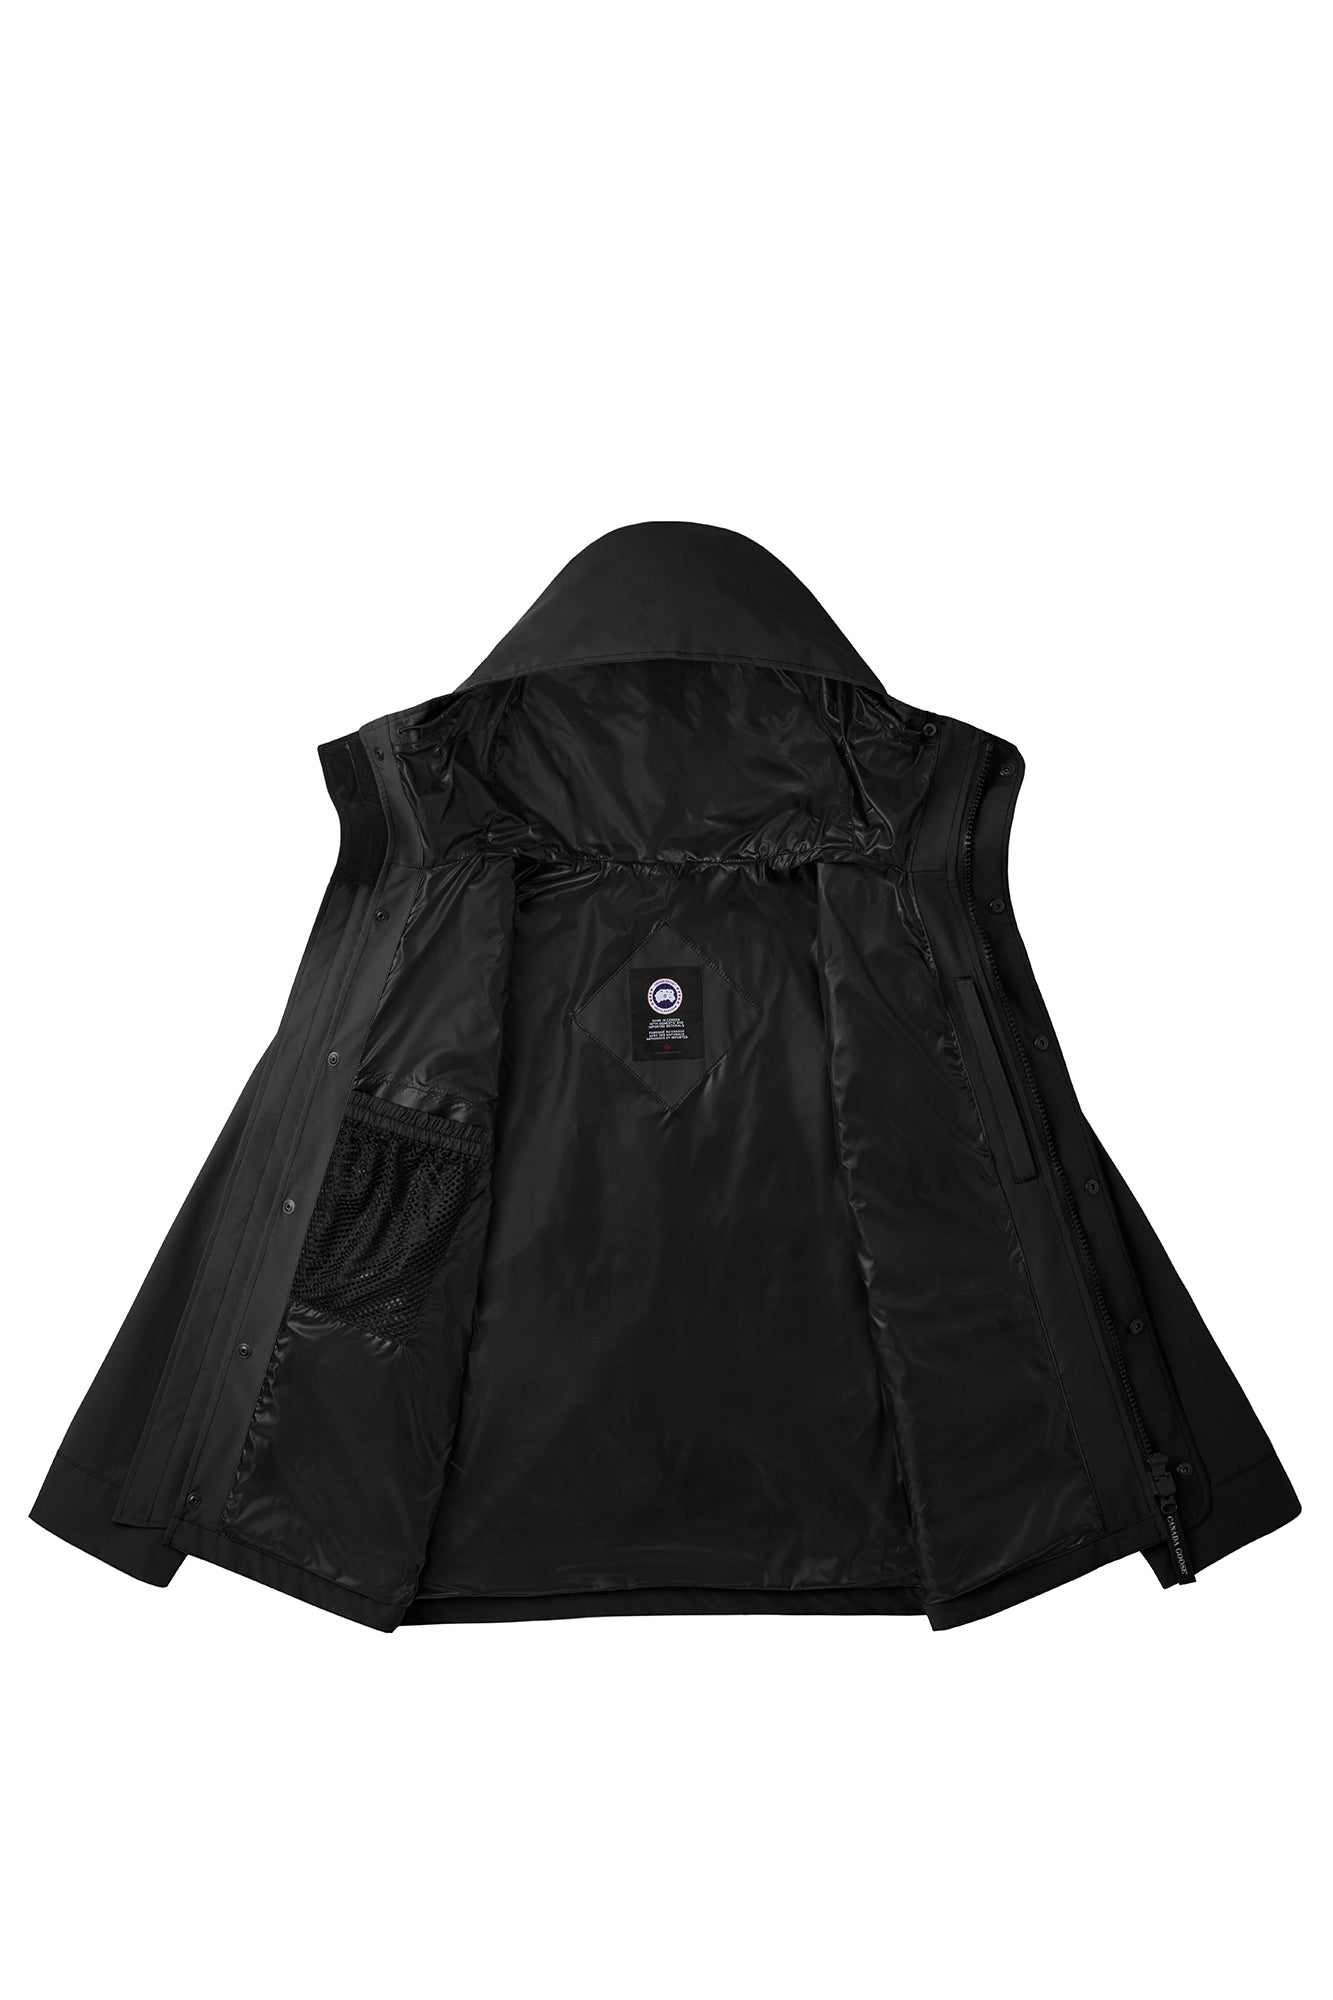 Lockeport Jacket Black